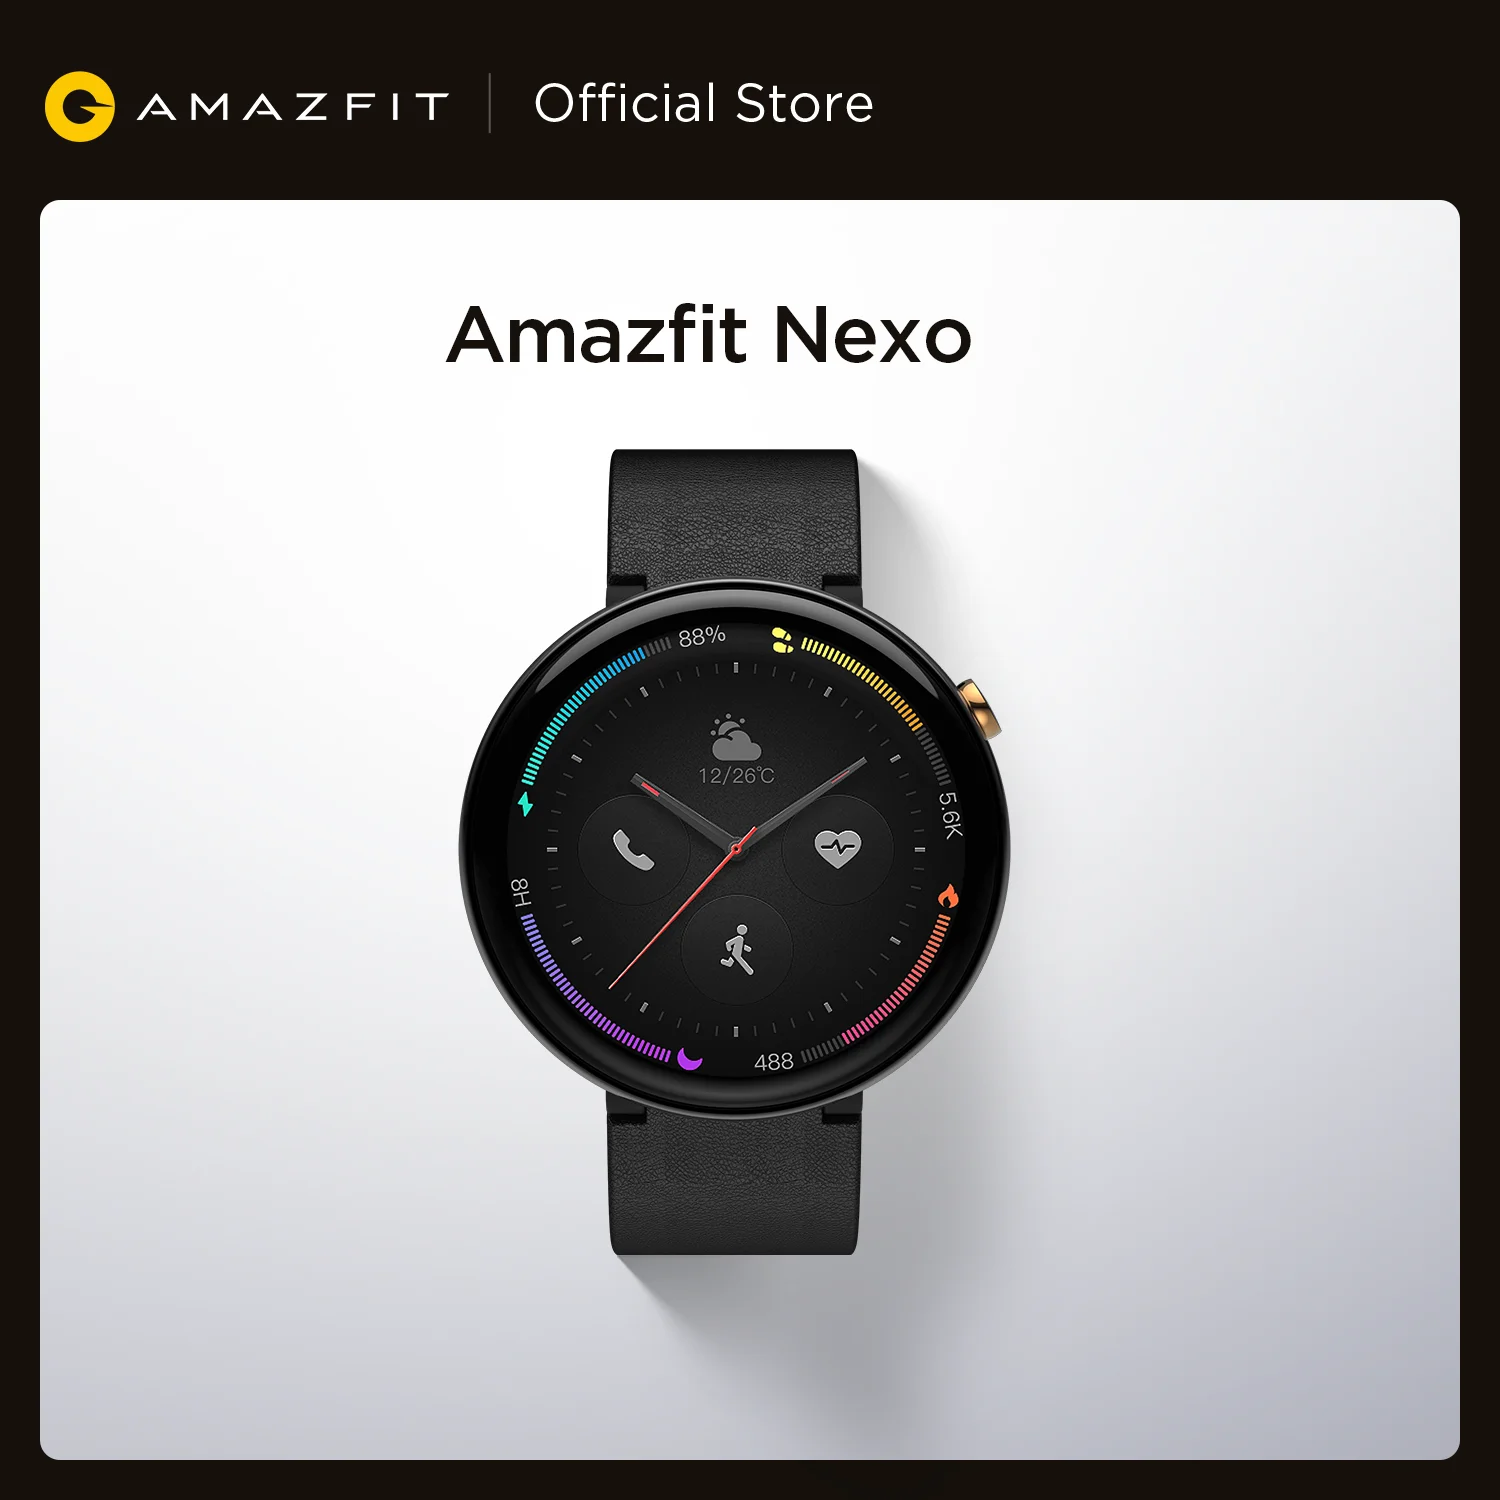 Amazfit Smartband modelo Nexo, versión Global, con bisel de cerámica, 10 modos deportivos, GPS Glonass, Pantalla AMOLED de 1,39 pulgadas para teléfono celulares Android